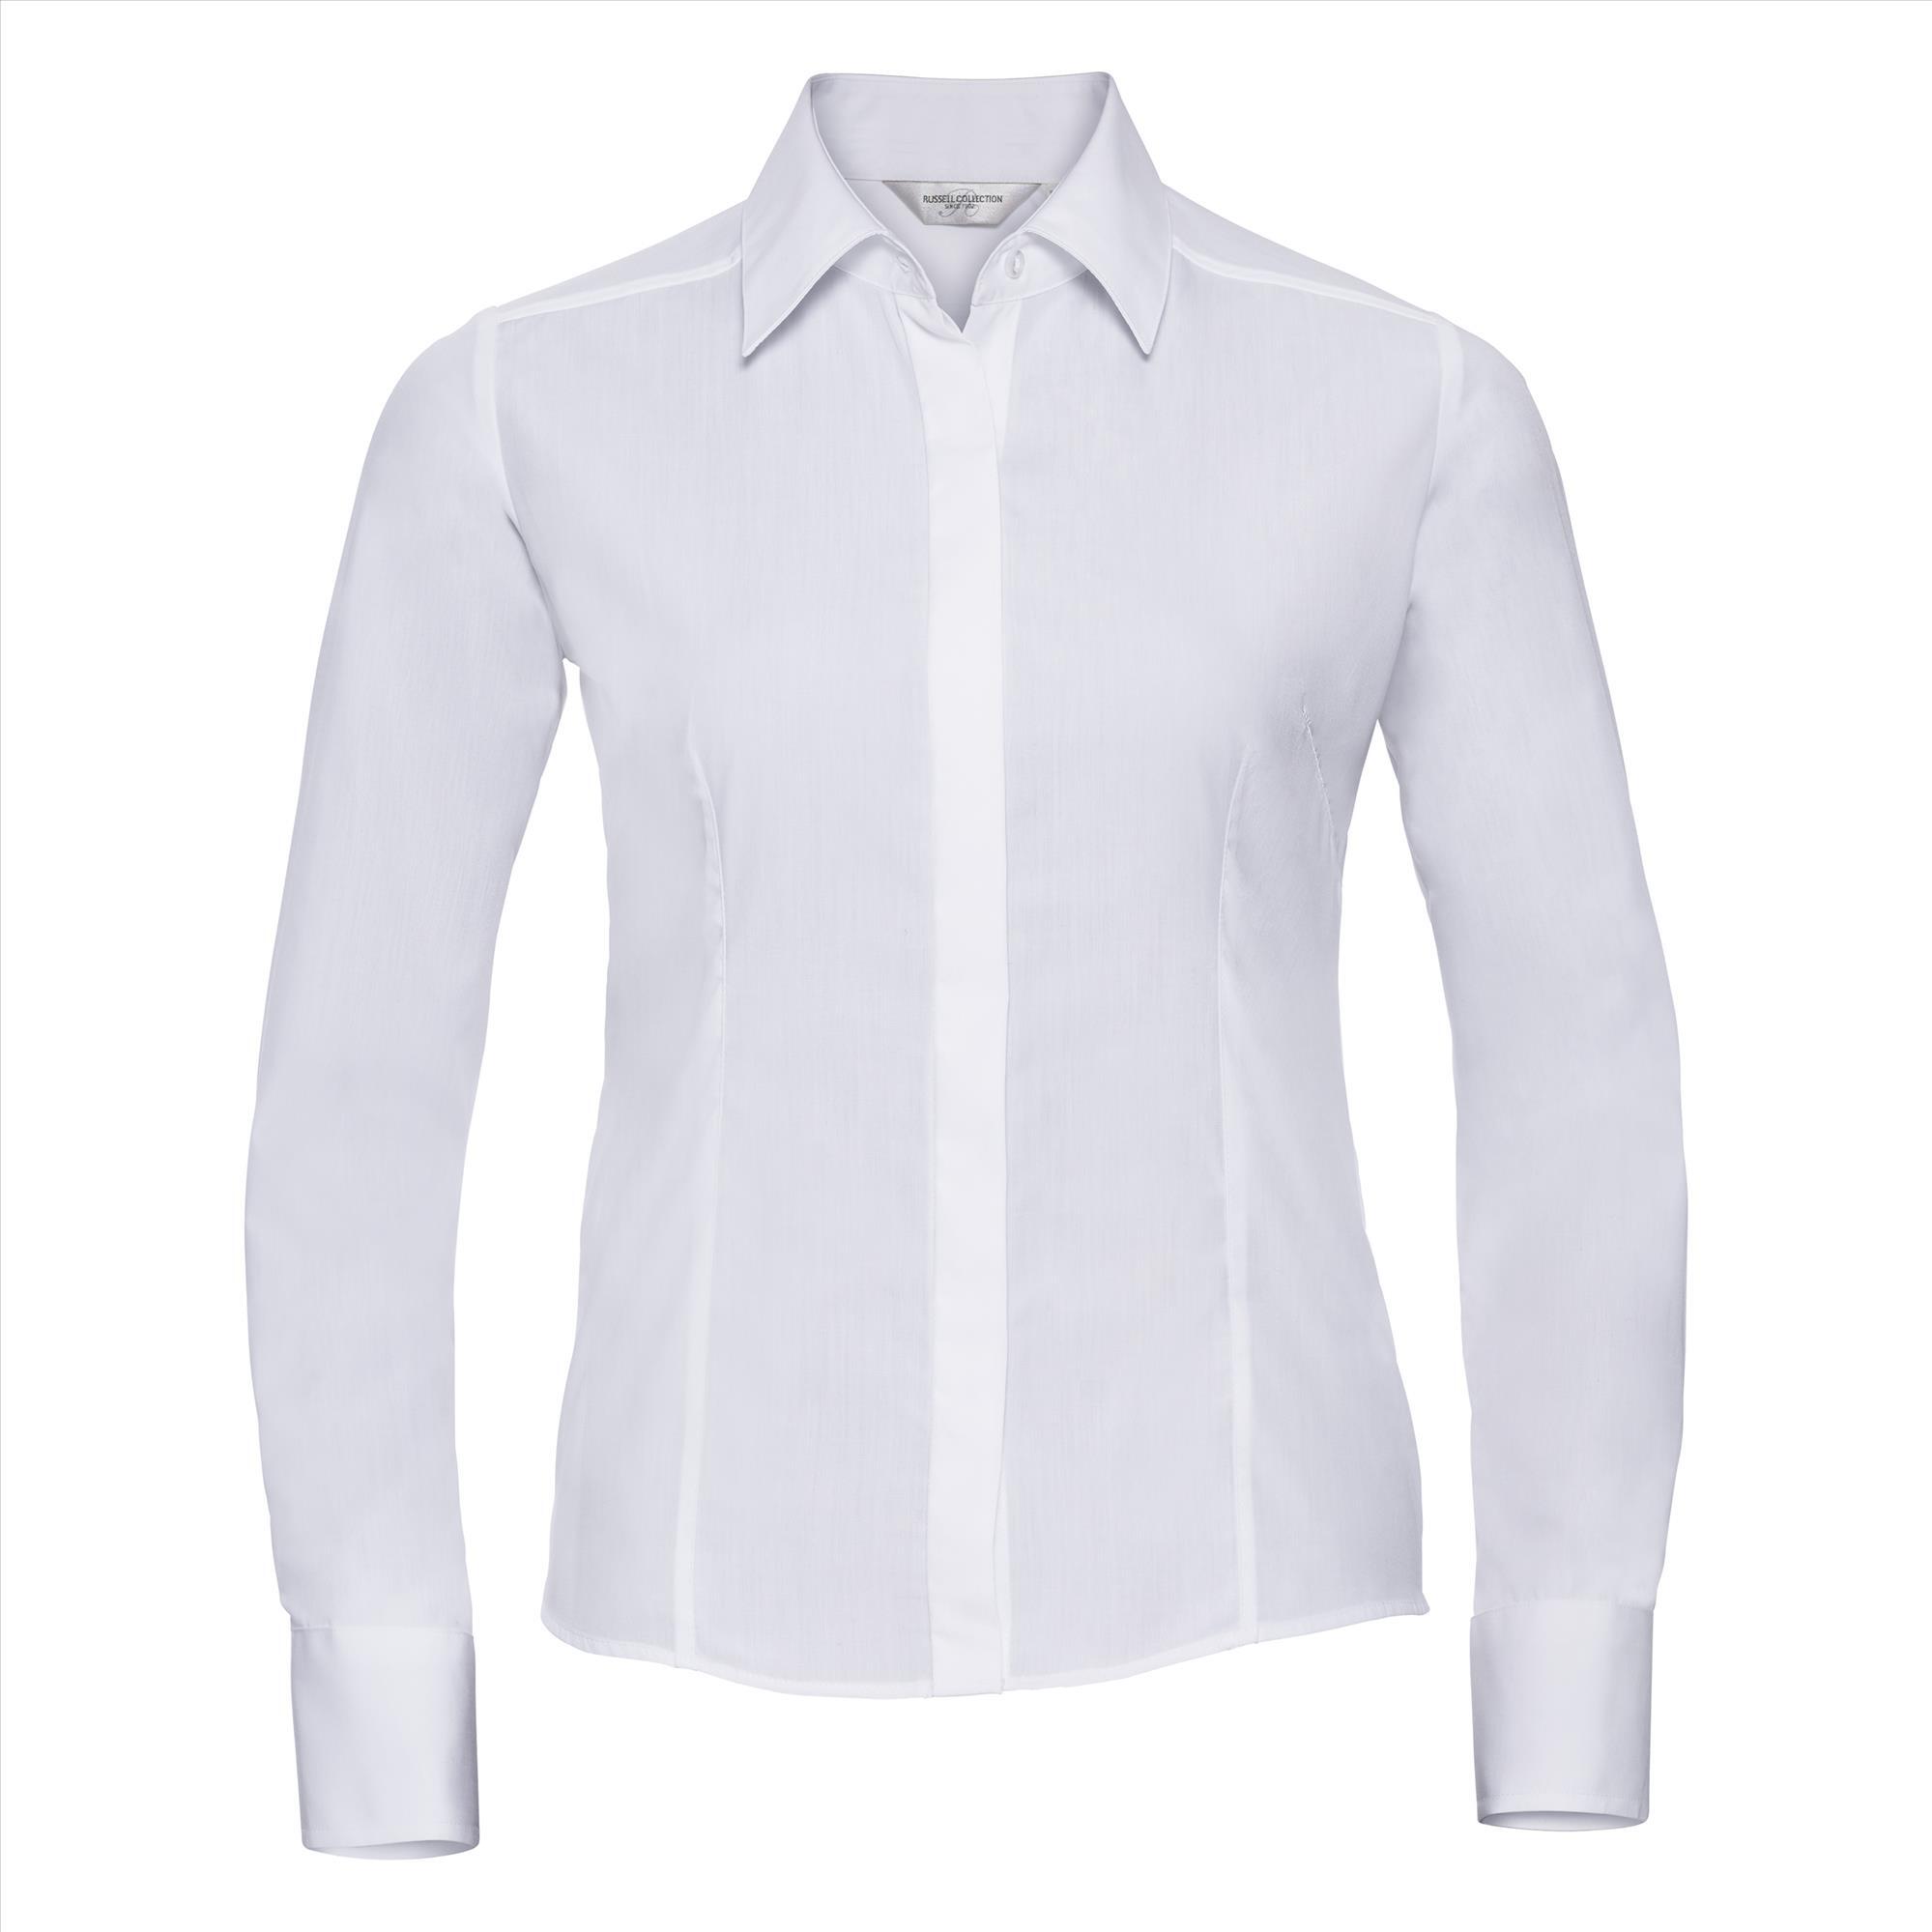 Dames blouse wit te bedrukken te personaliseren met bedrijfslogo